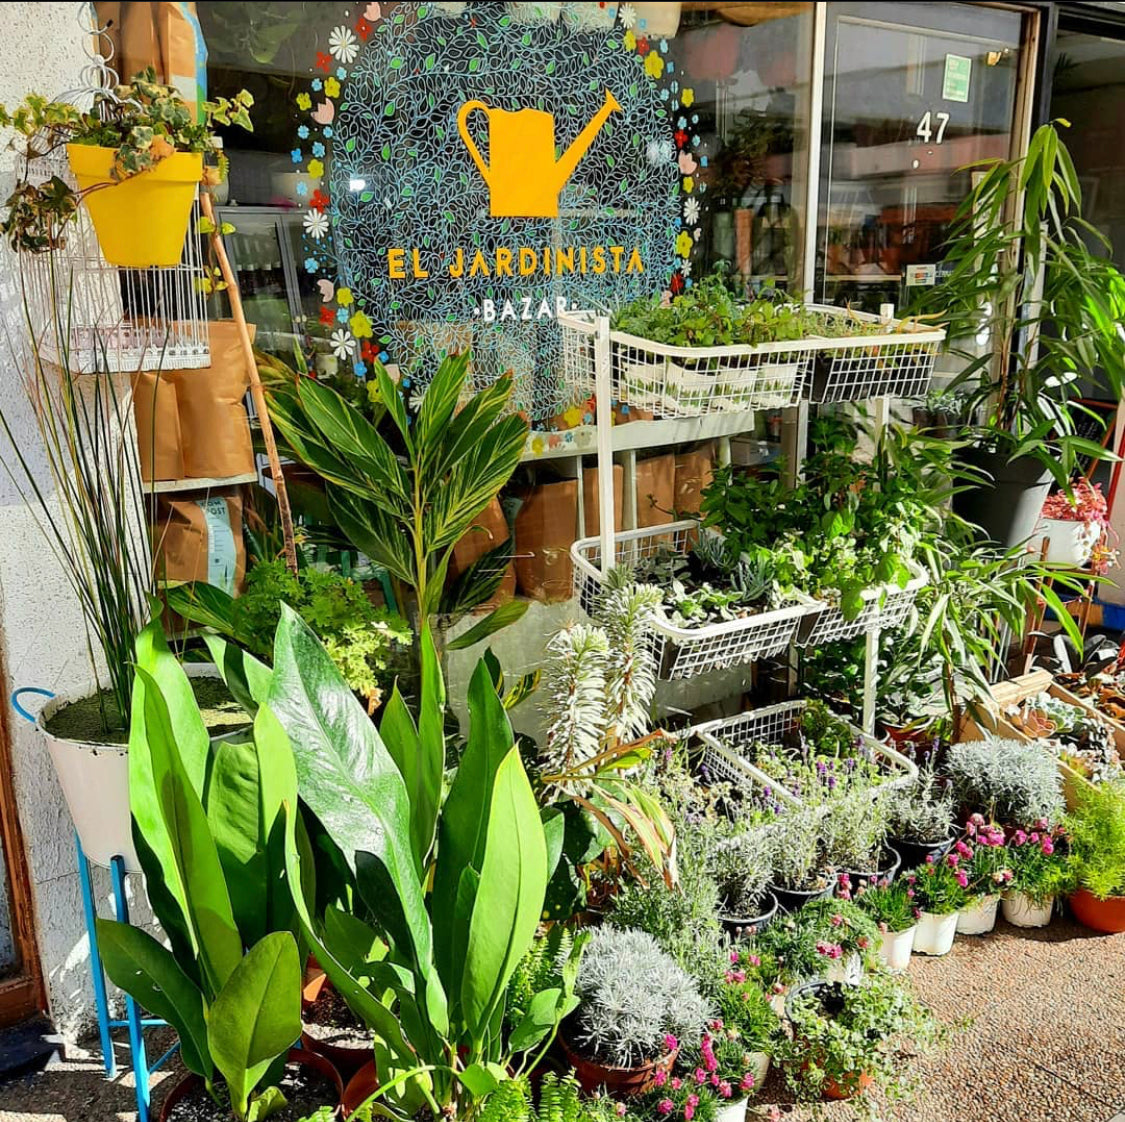 EL Jardinista: ¡La tienda de tus plantas!